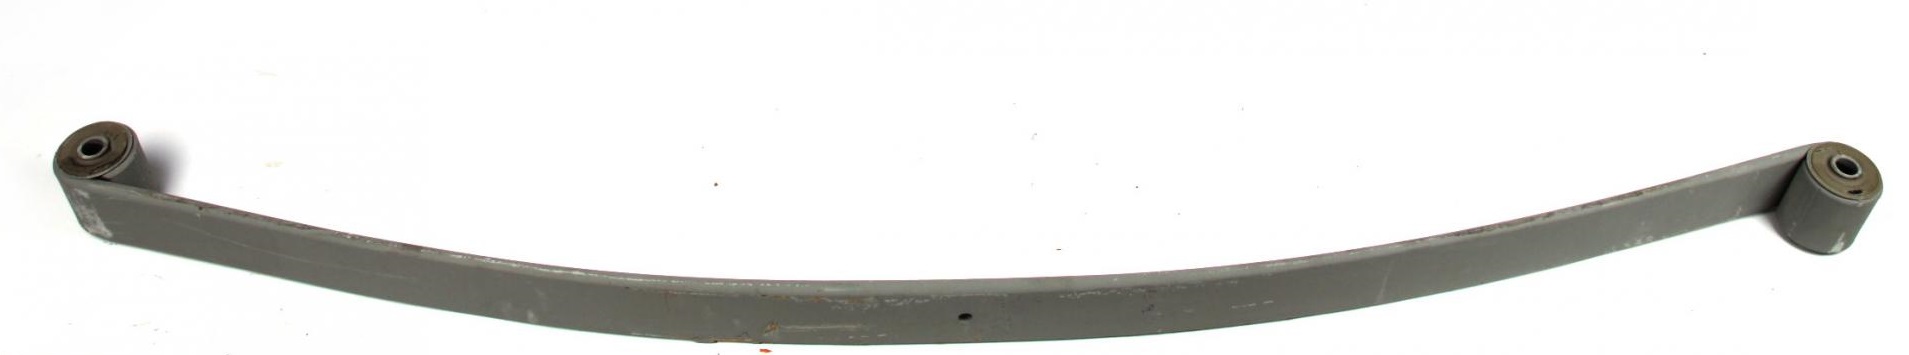 Рессора задняя коренная Iveco Daily 59.12 (1/14mm) (70/700/715)